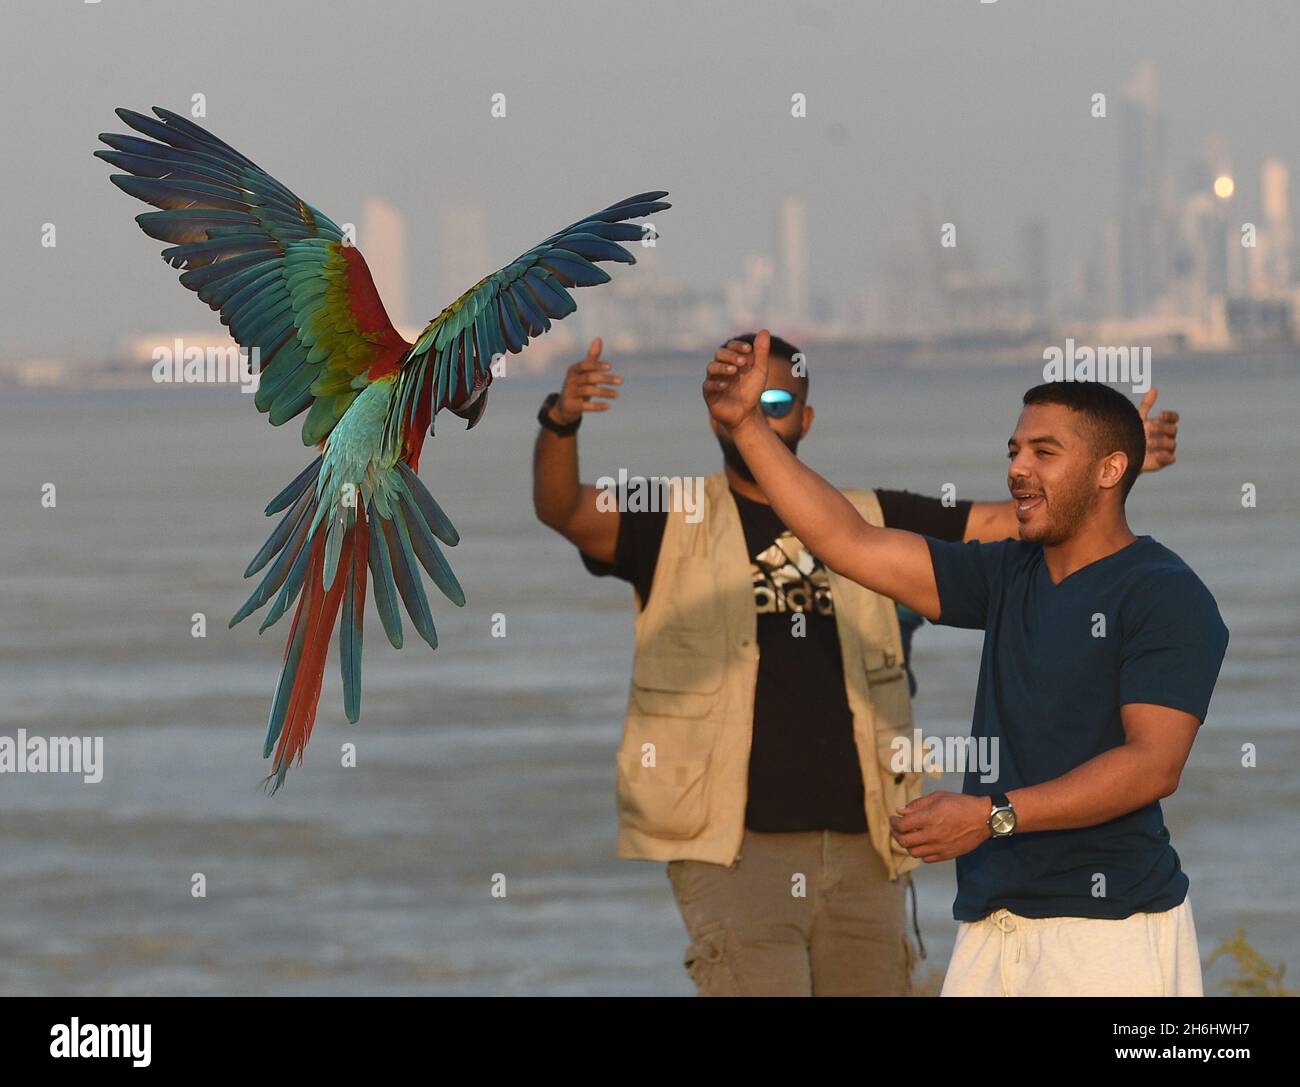 Hauptstadt Des Gouvernements, Kuwait. November 2021. Vogelfreunde trainieren einen Papagei während einer Trainingsausstellung in Capital Governorate, Kuwait, 15. November 2021. Quelle: Asad/Xinhua/Alamy Live News Stockfoto